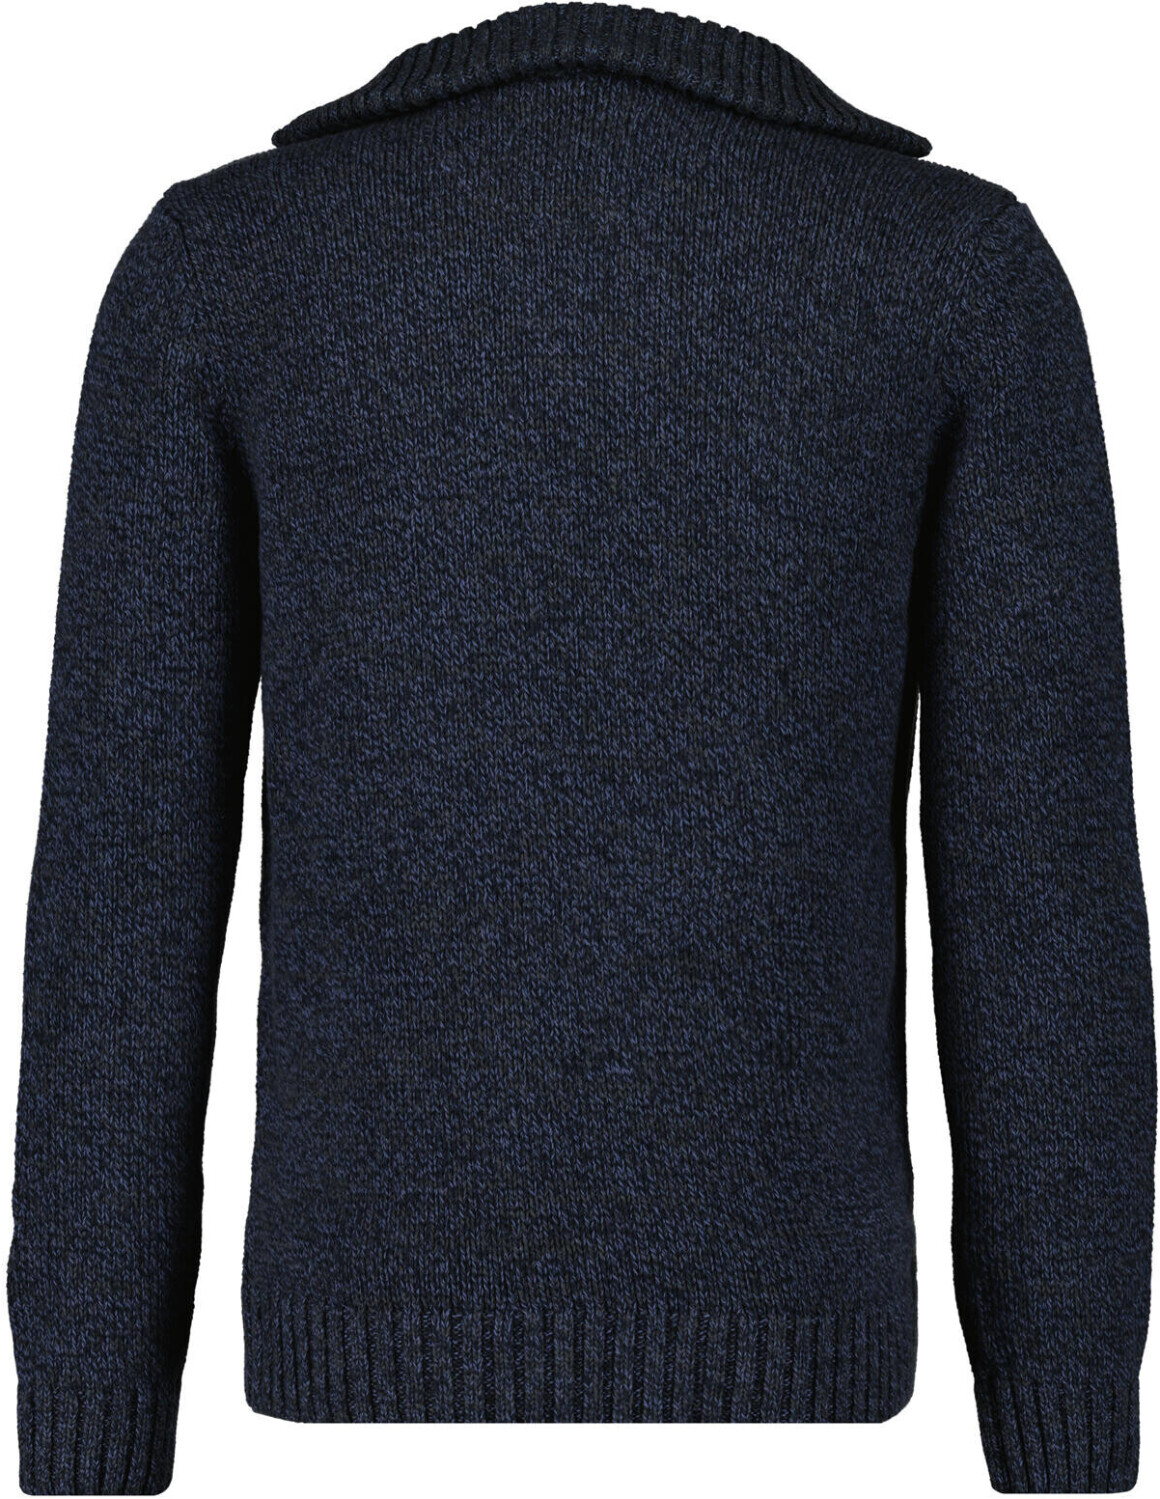 Ragman Tweed-Pullover mit Troyer (502662-170) dunkelblau-grau mouliniert ab  69,99 € | Preisvergleich bei